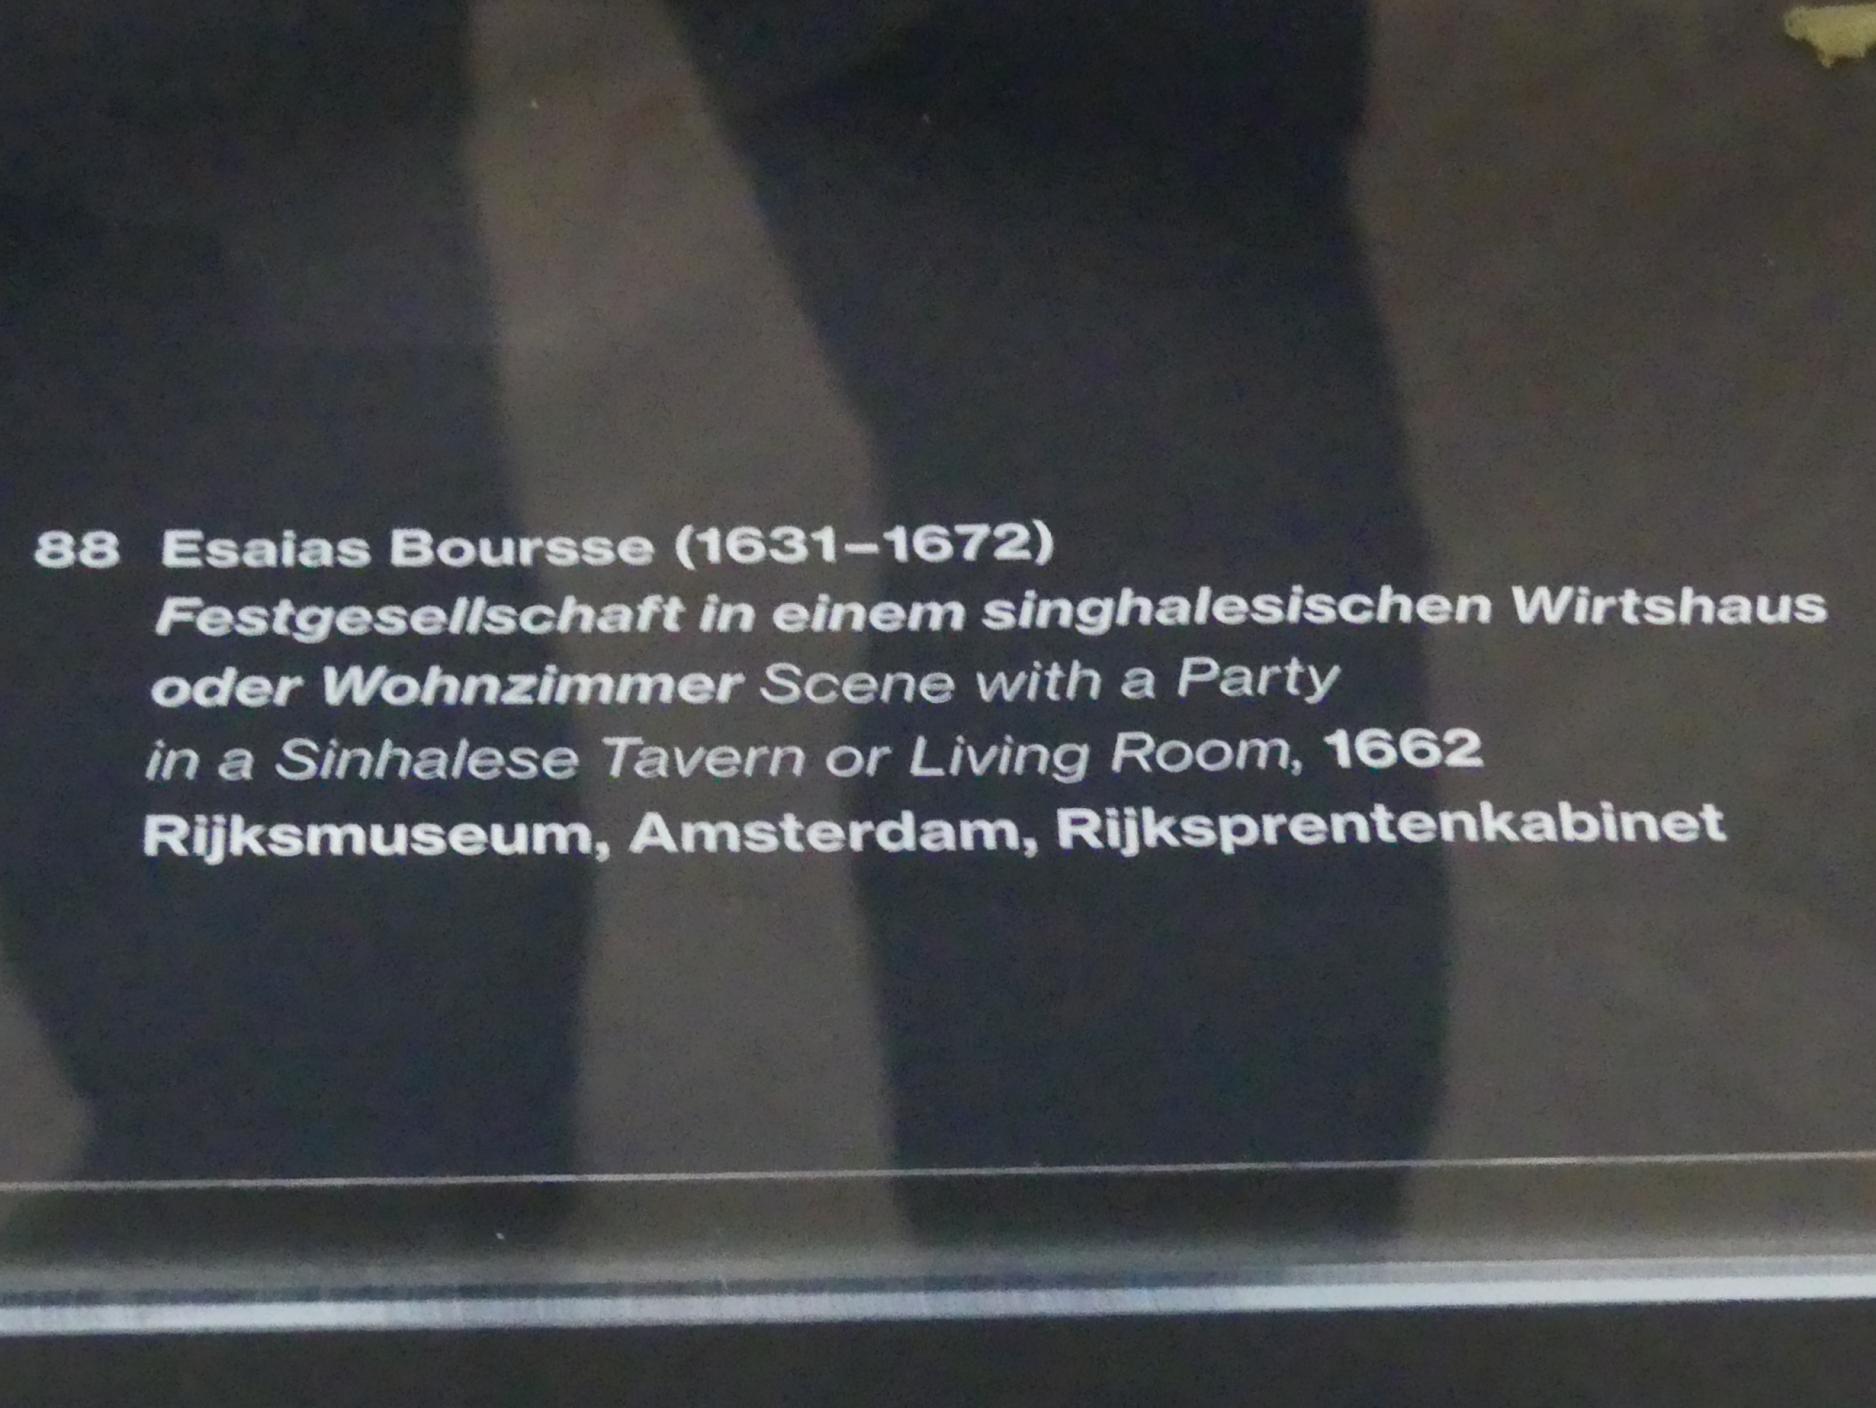 Esaias Boursse (1662), Festgesellschaft in einem singhalesischen Wirtshaus oder Wohnzimmer, Potsdam, Museum Barberini, Ausstellung "Rembrandts Orient" vom 13.03.-27.06.2021, Saal A5, 1662, Bild 2/3